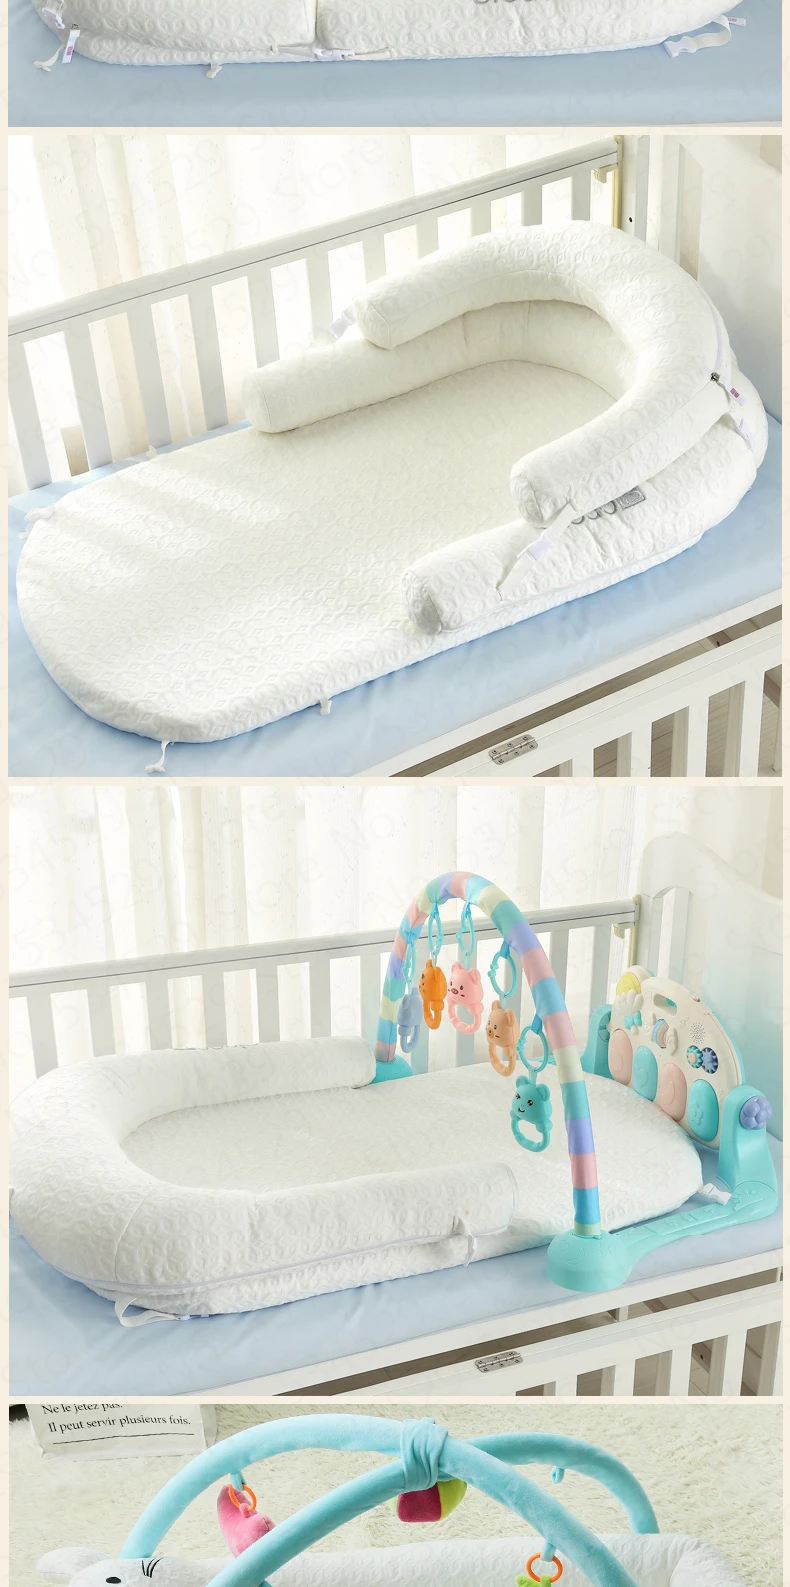 Для продажи, портативная многофункциональная бионическая кроватка для новорожденных с защитой от давления, дышащая хлопковая детская кровать, полностью моющаяся Bb кровать